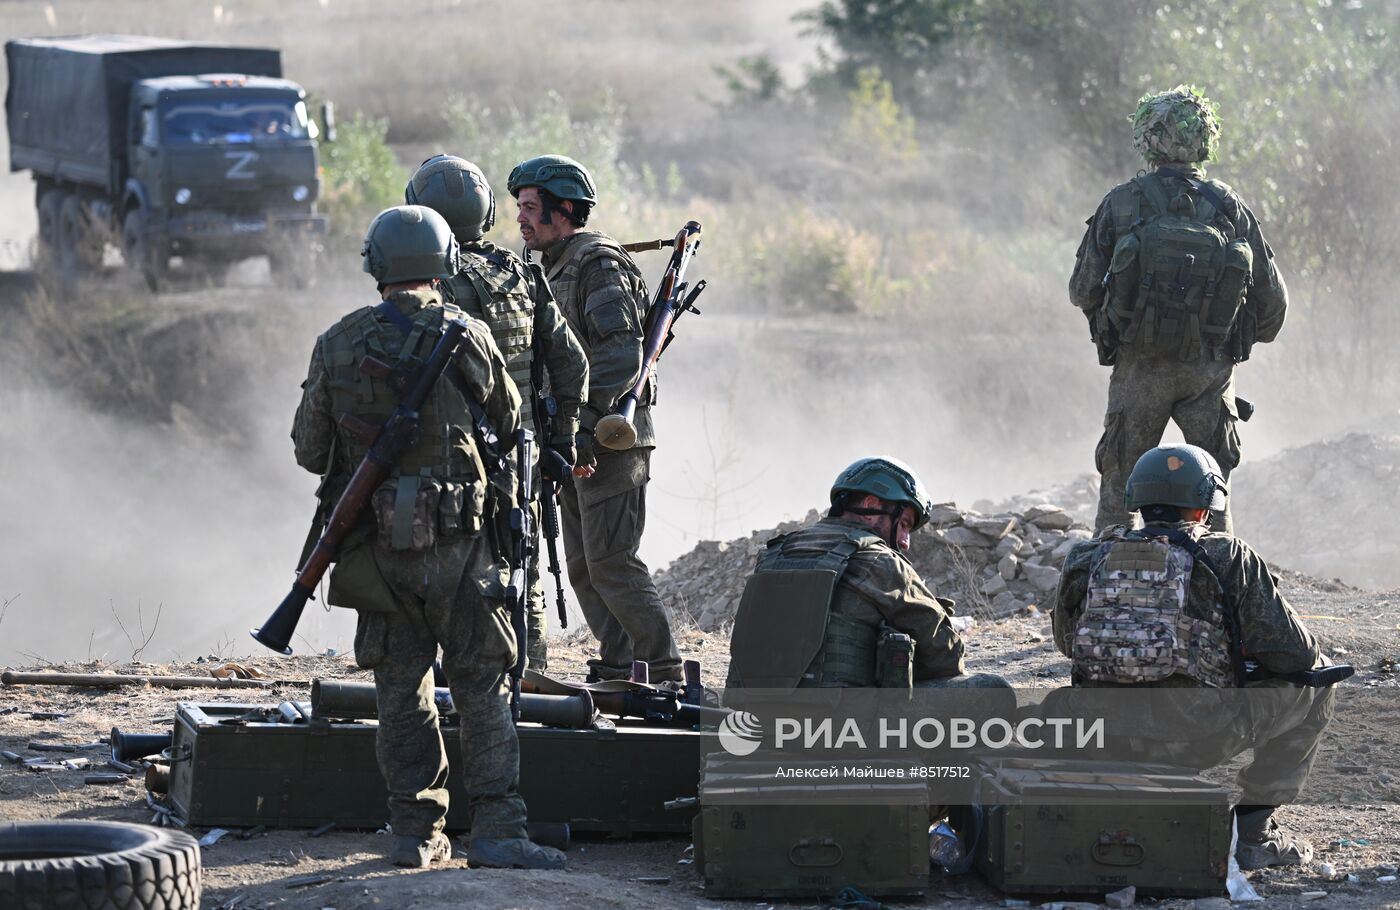 كتيبة من العسكريين الأوكرانيين سابقا تدخل الخدمة في الجيش الروسي